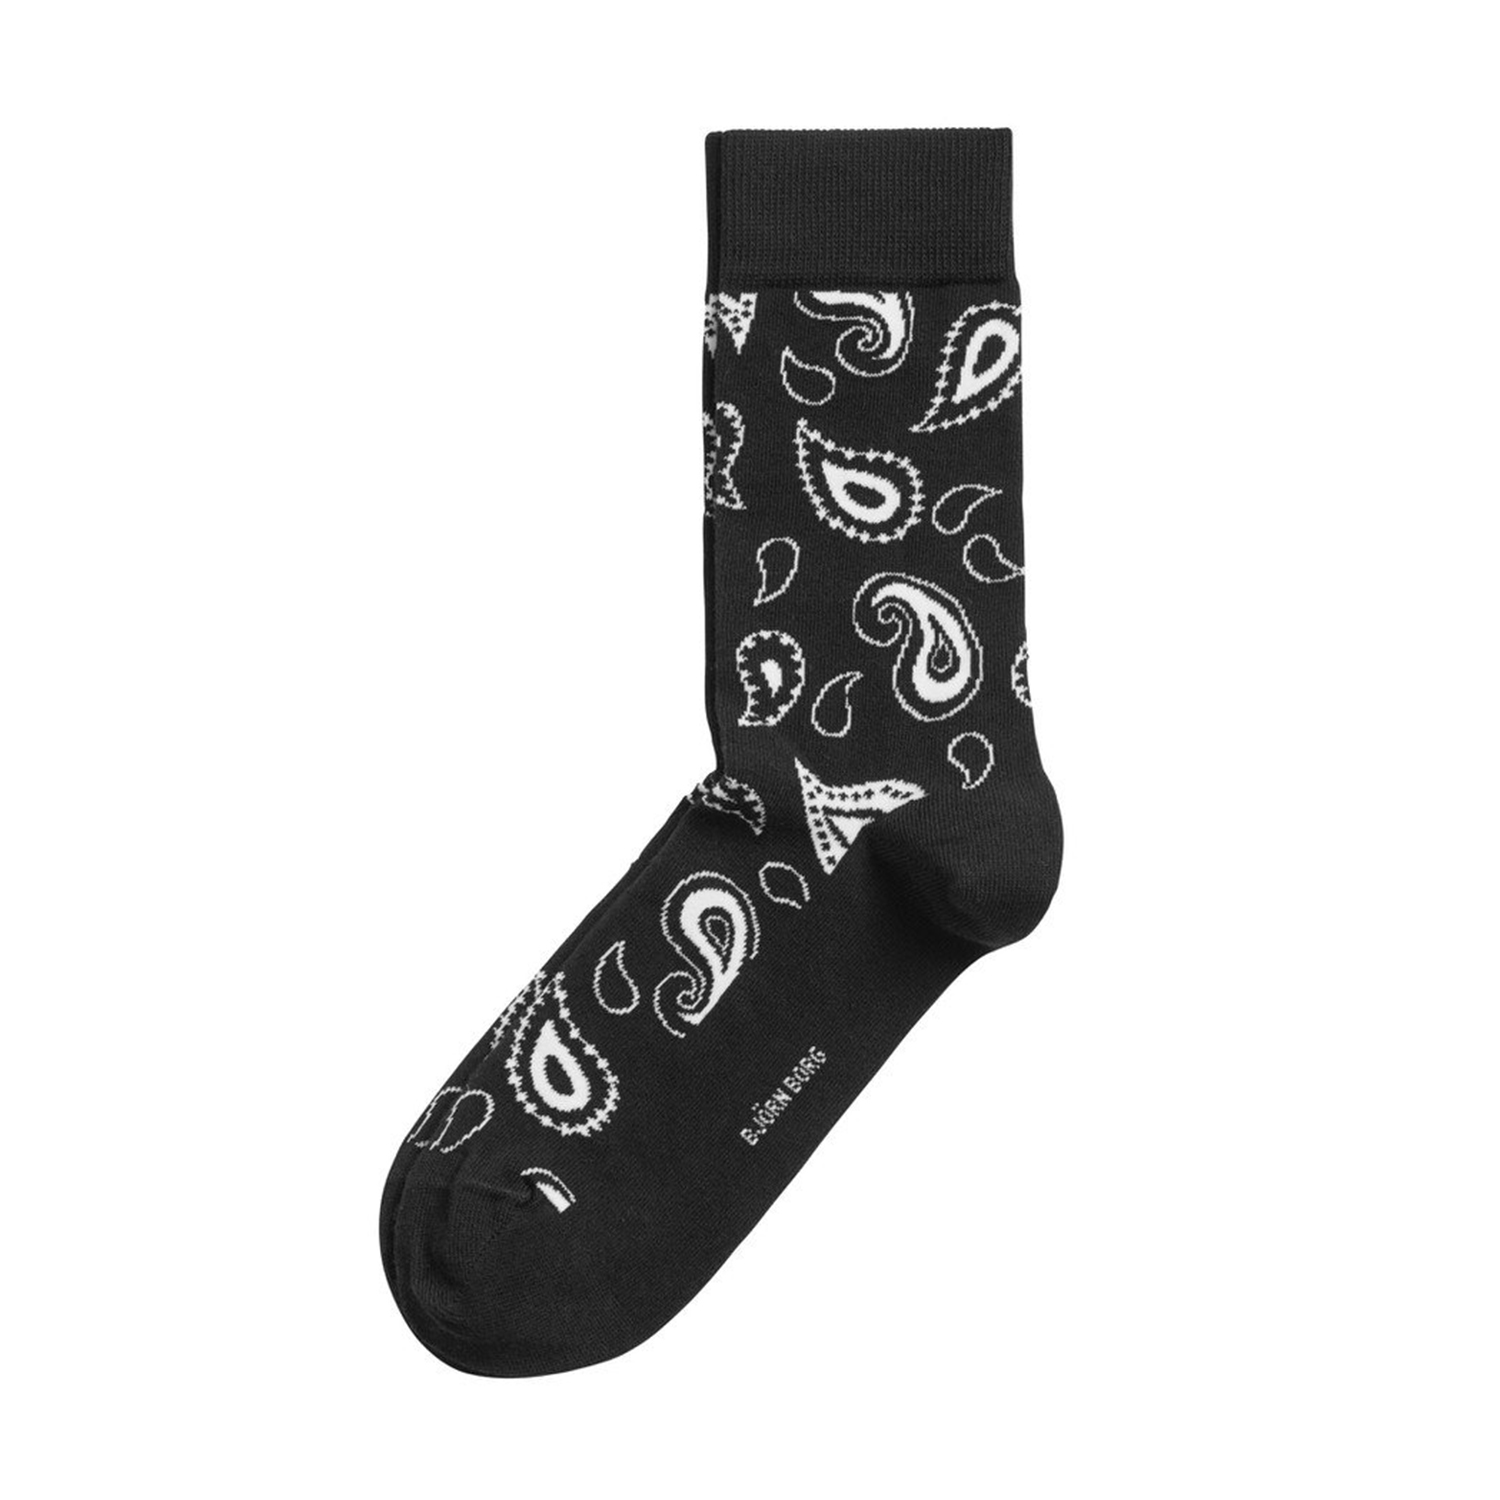 Ανδρικά/Αξεσουάρ/Κάλτσες BJORN BORG - Ανδρικές κάλτσες BJORN BORG PAISLEY μαύρες λευκές